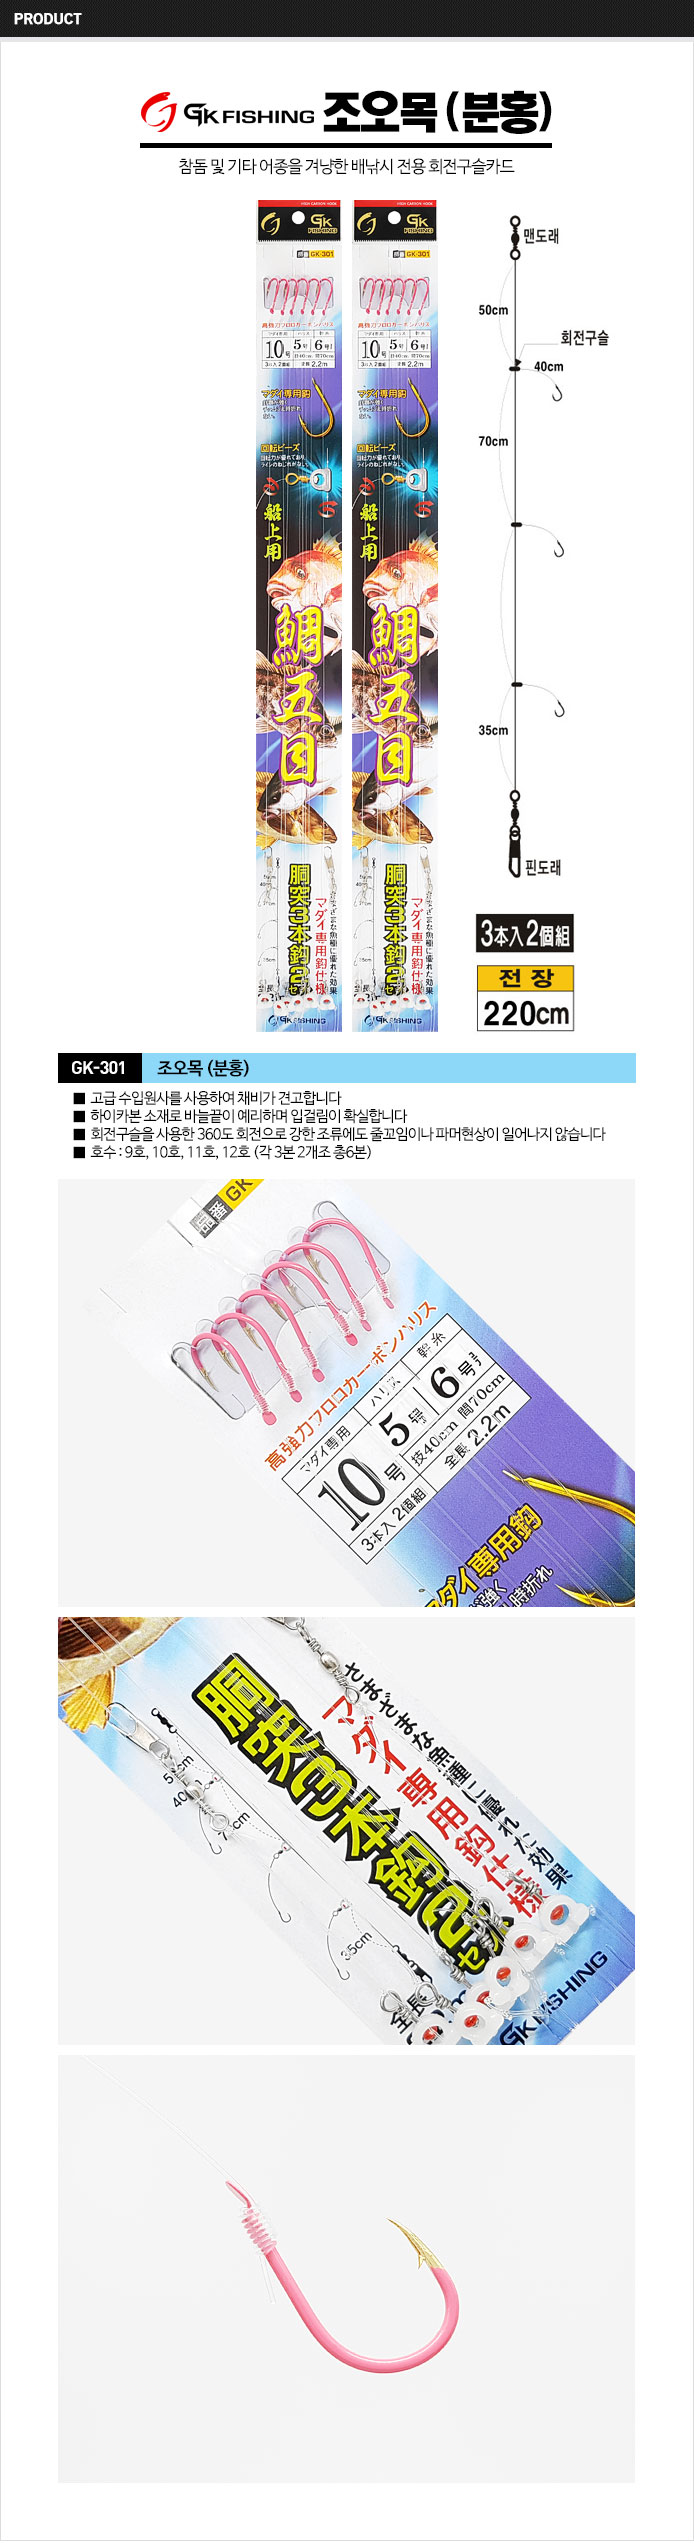 금호조침 조오목(분홍) 참돔카드채비 GK-301